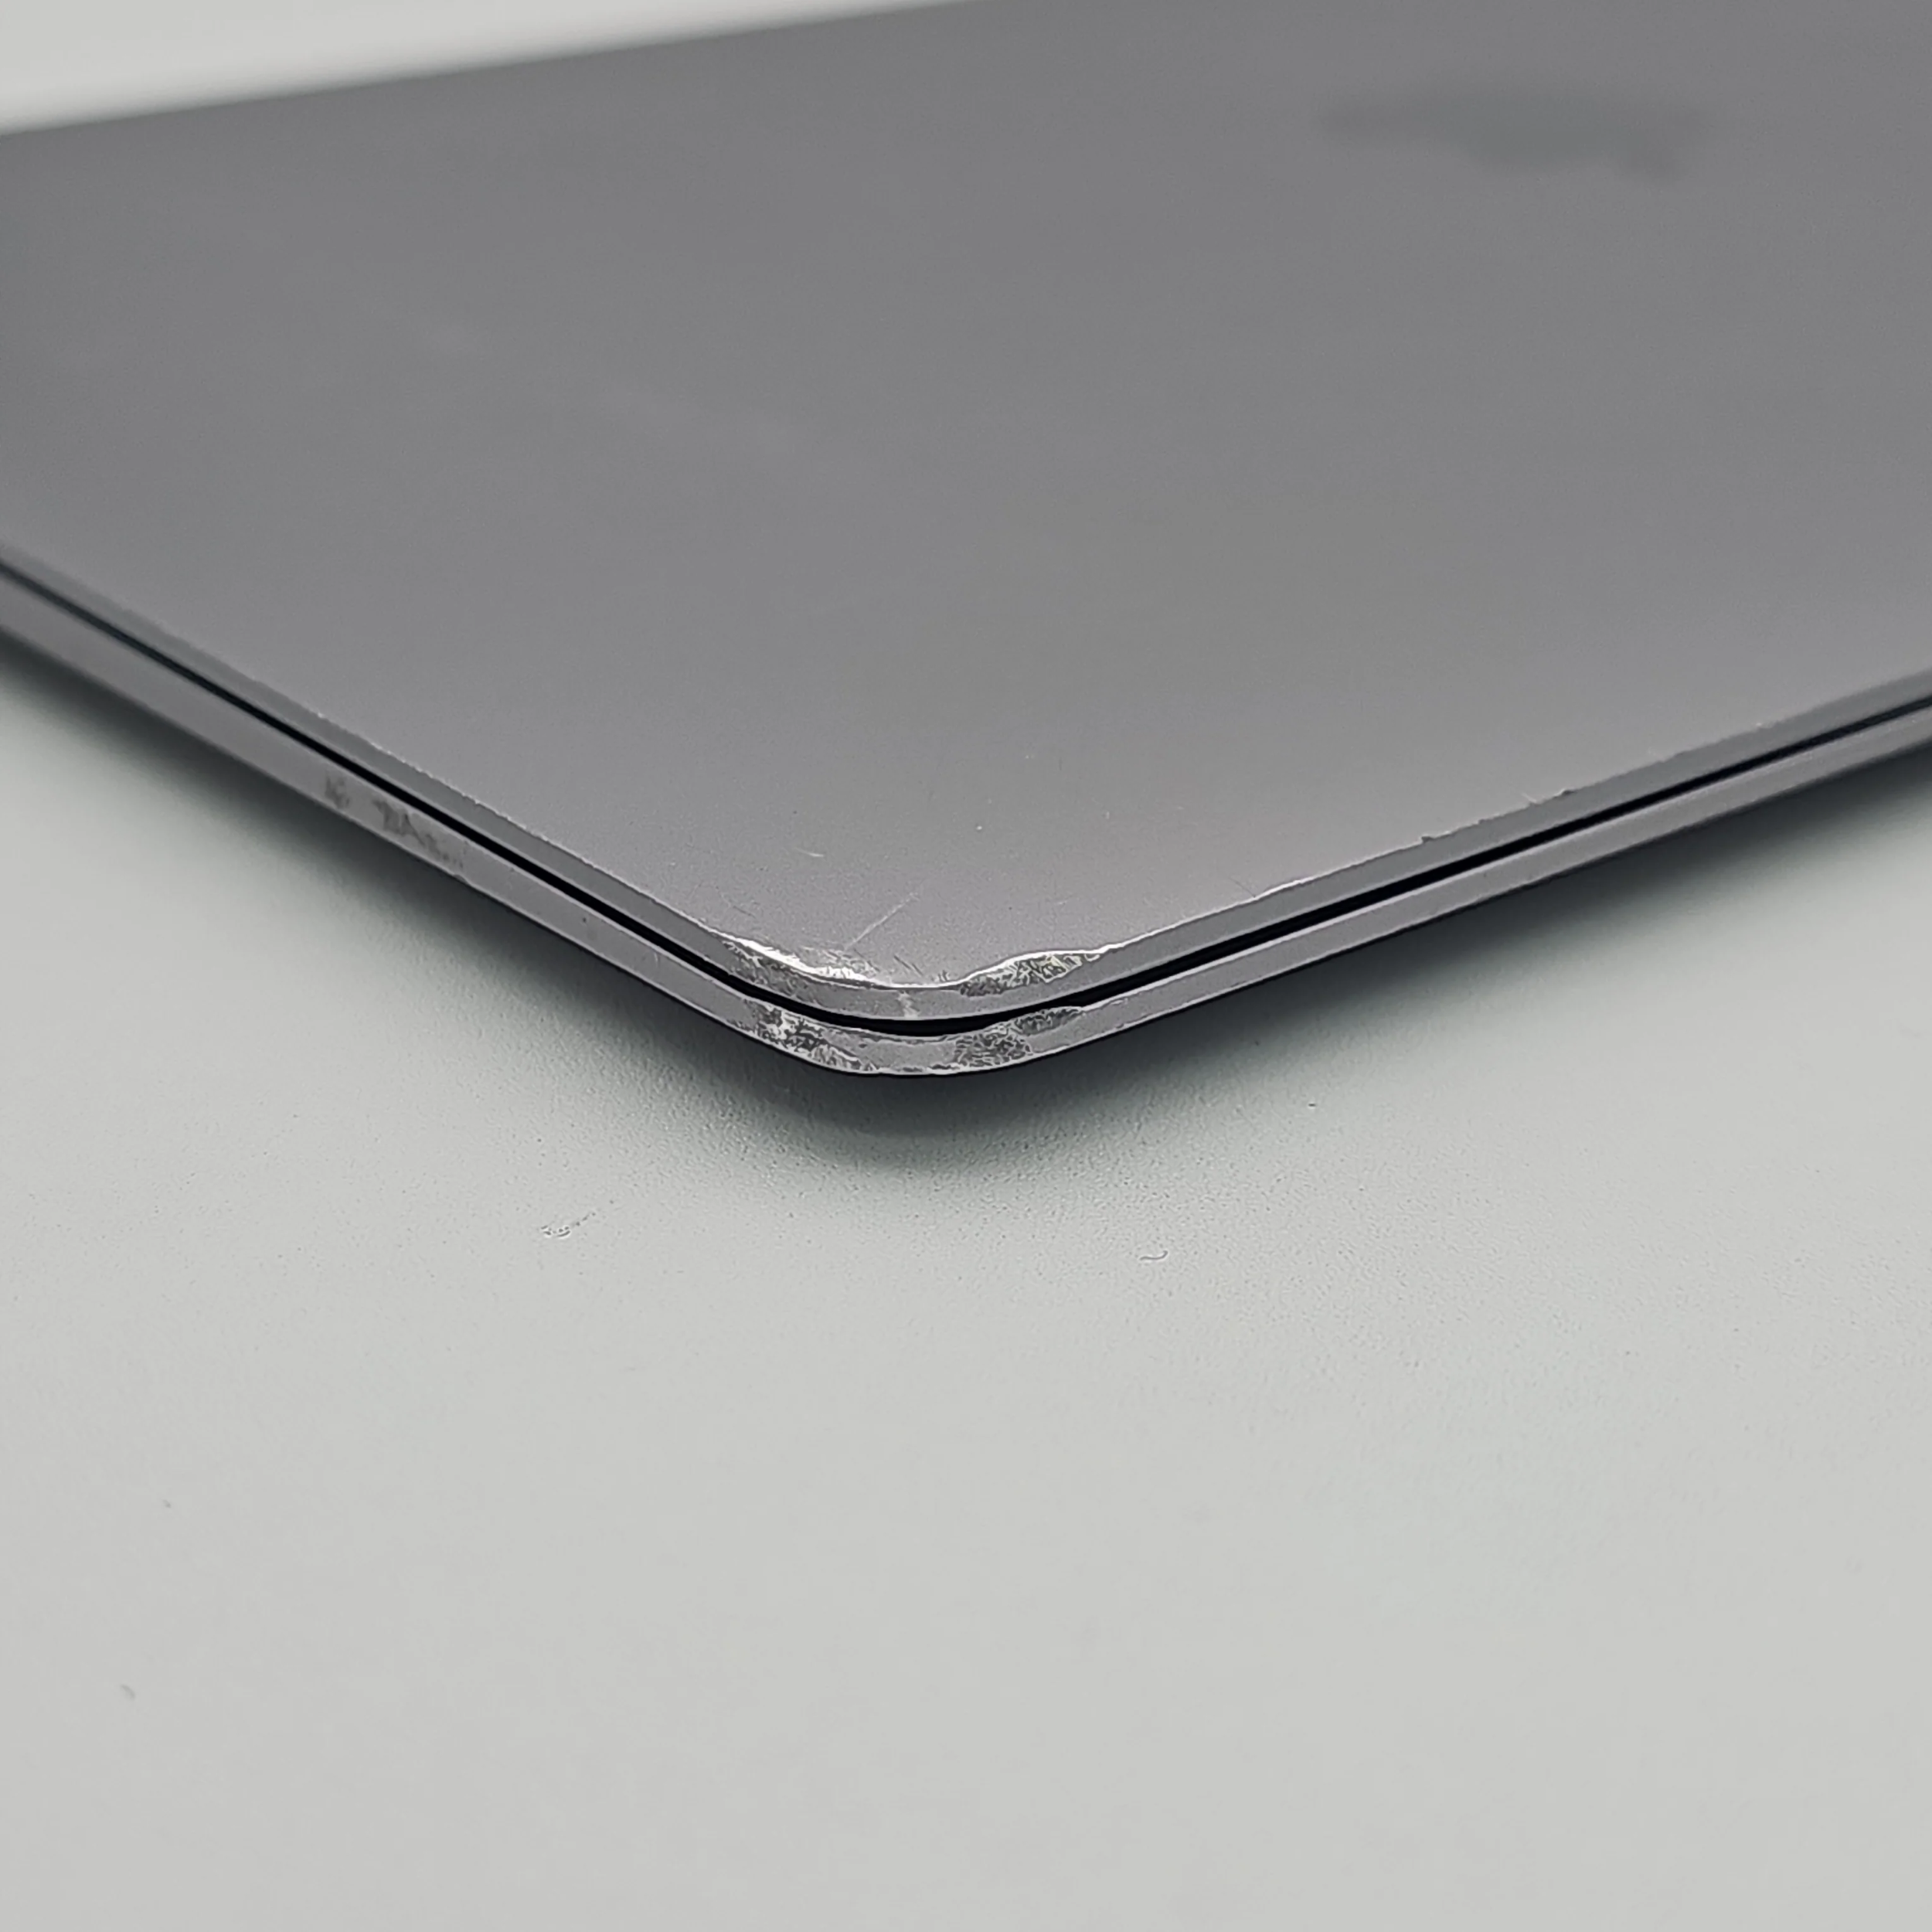 2019 Apple MacBook Air 13